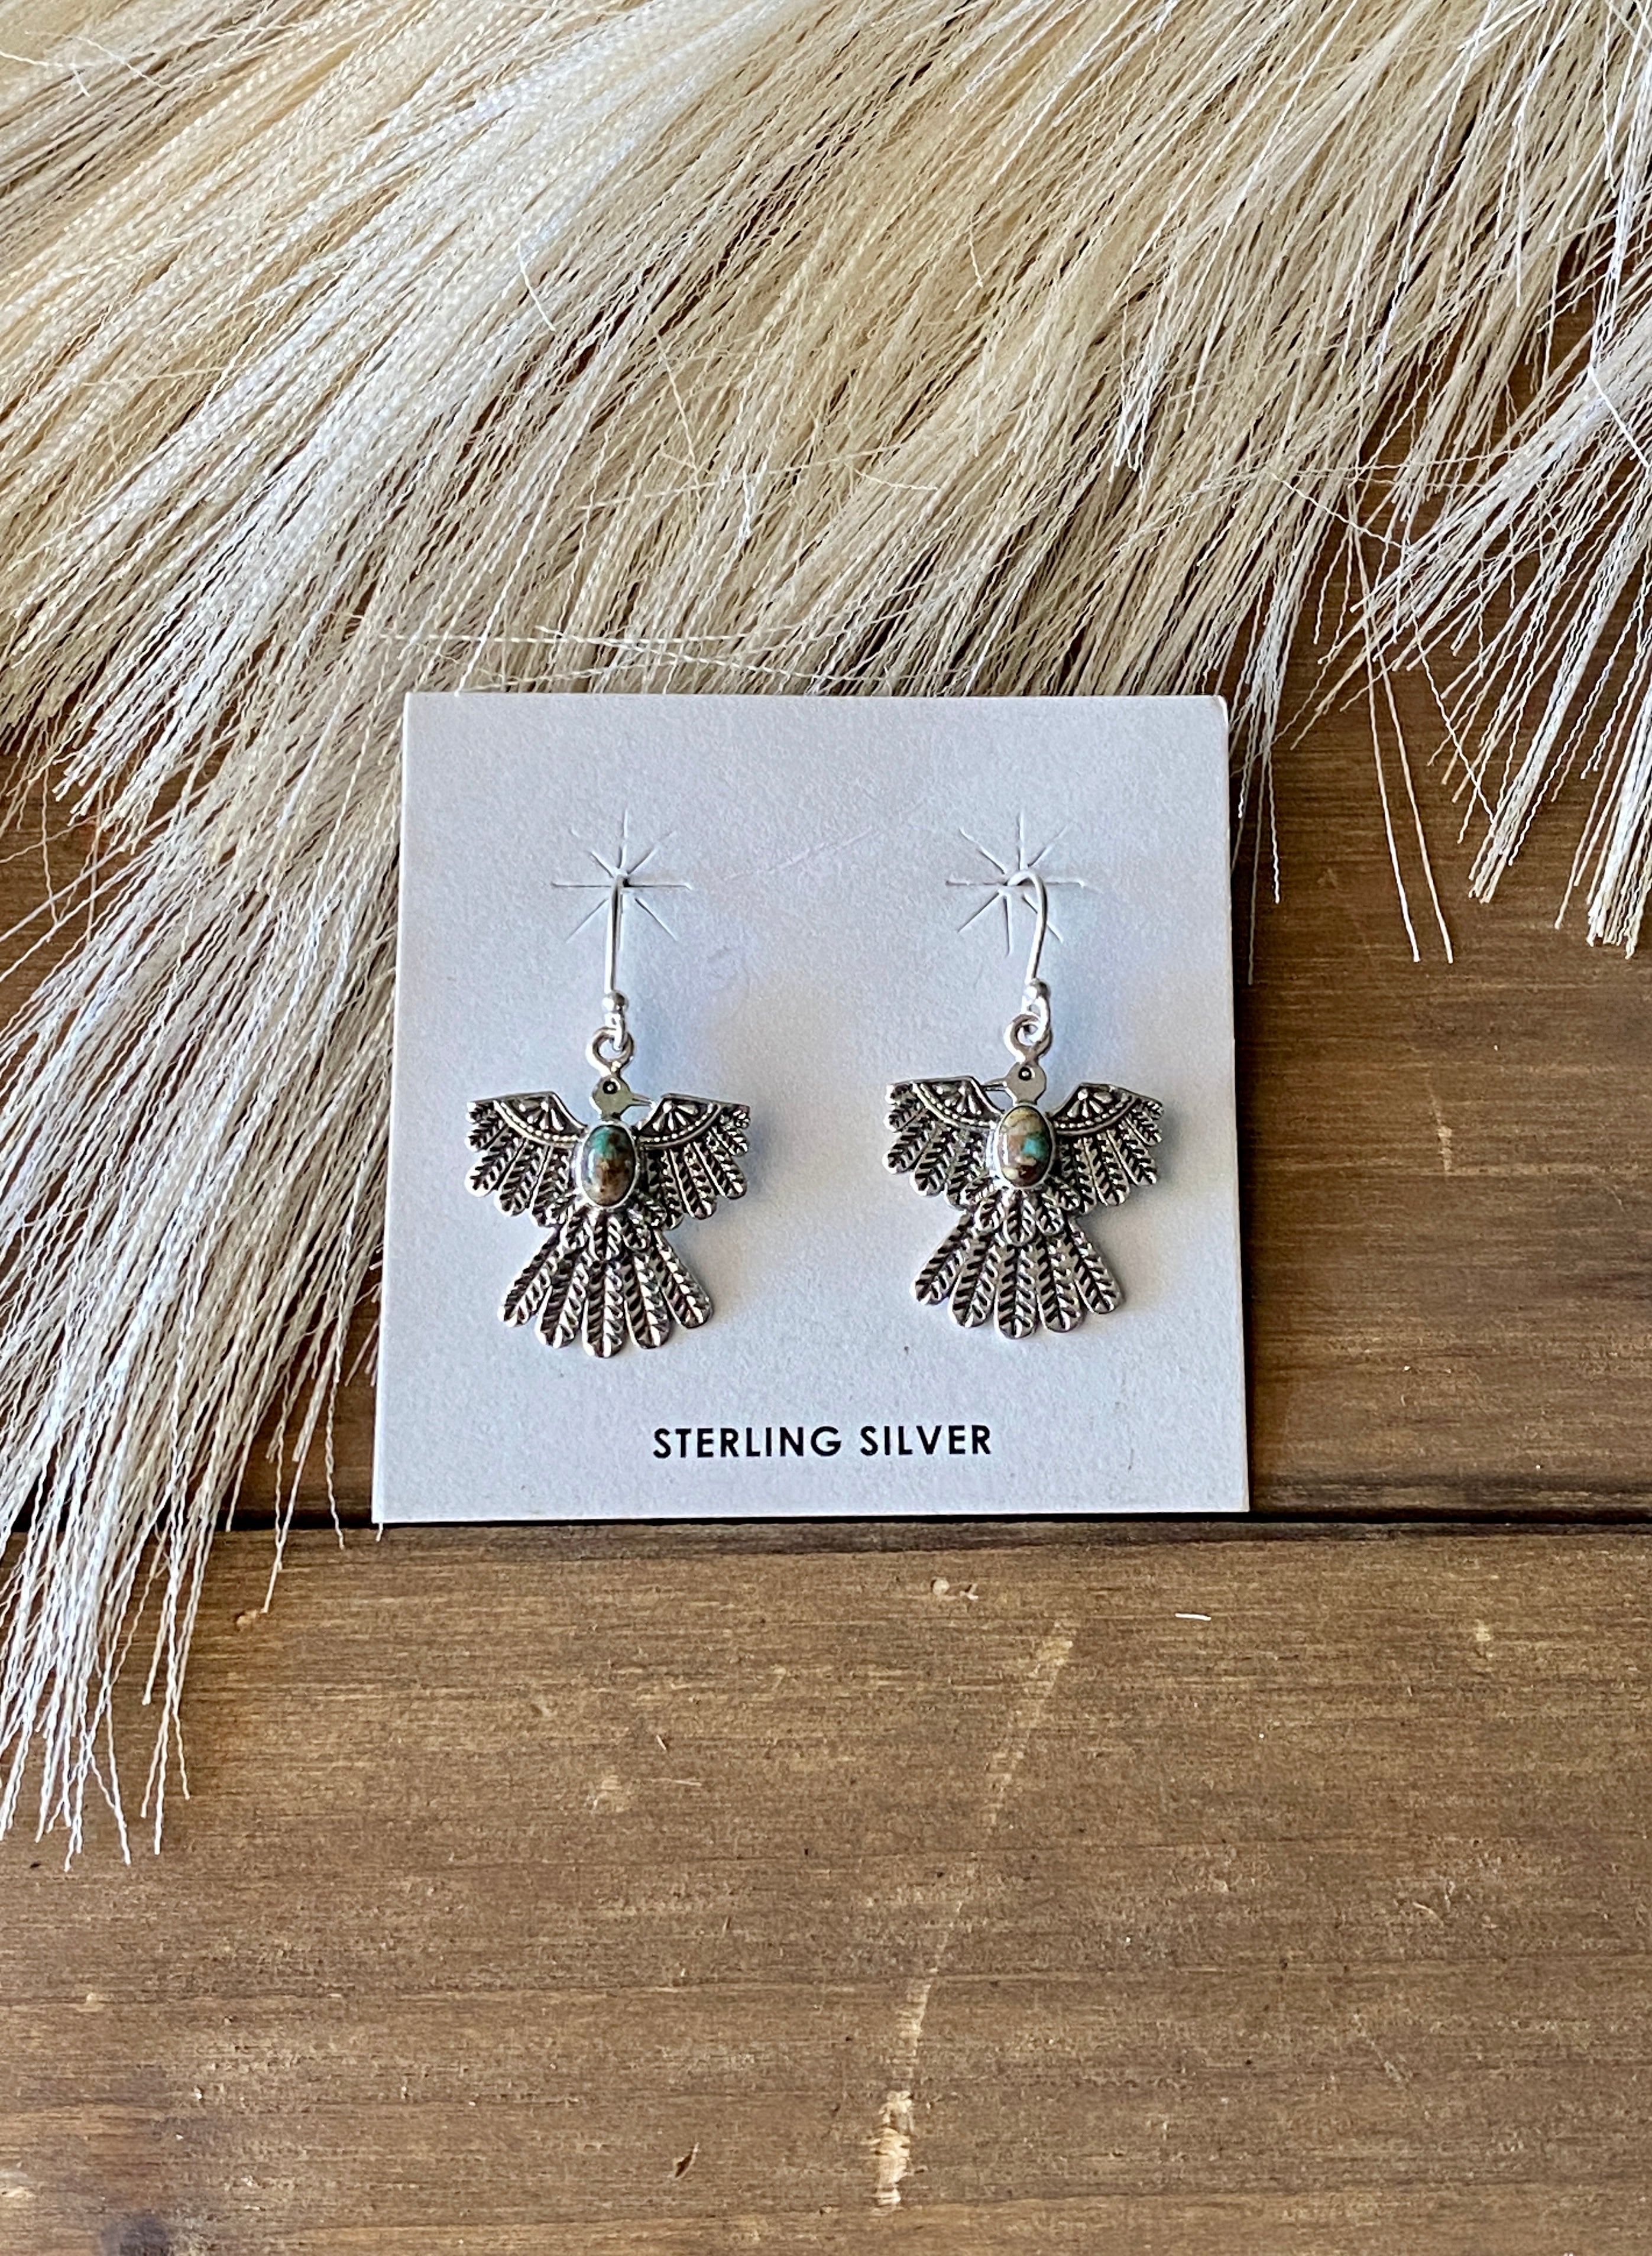 Southwest Handmade Royston Turquoise & Sterling Silver Thunderbird Dangles Earrings